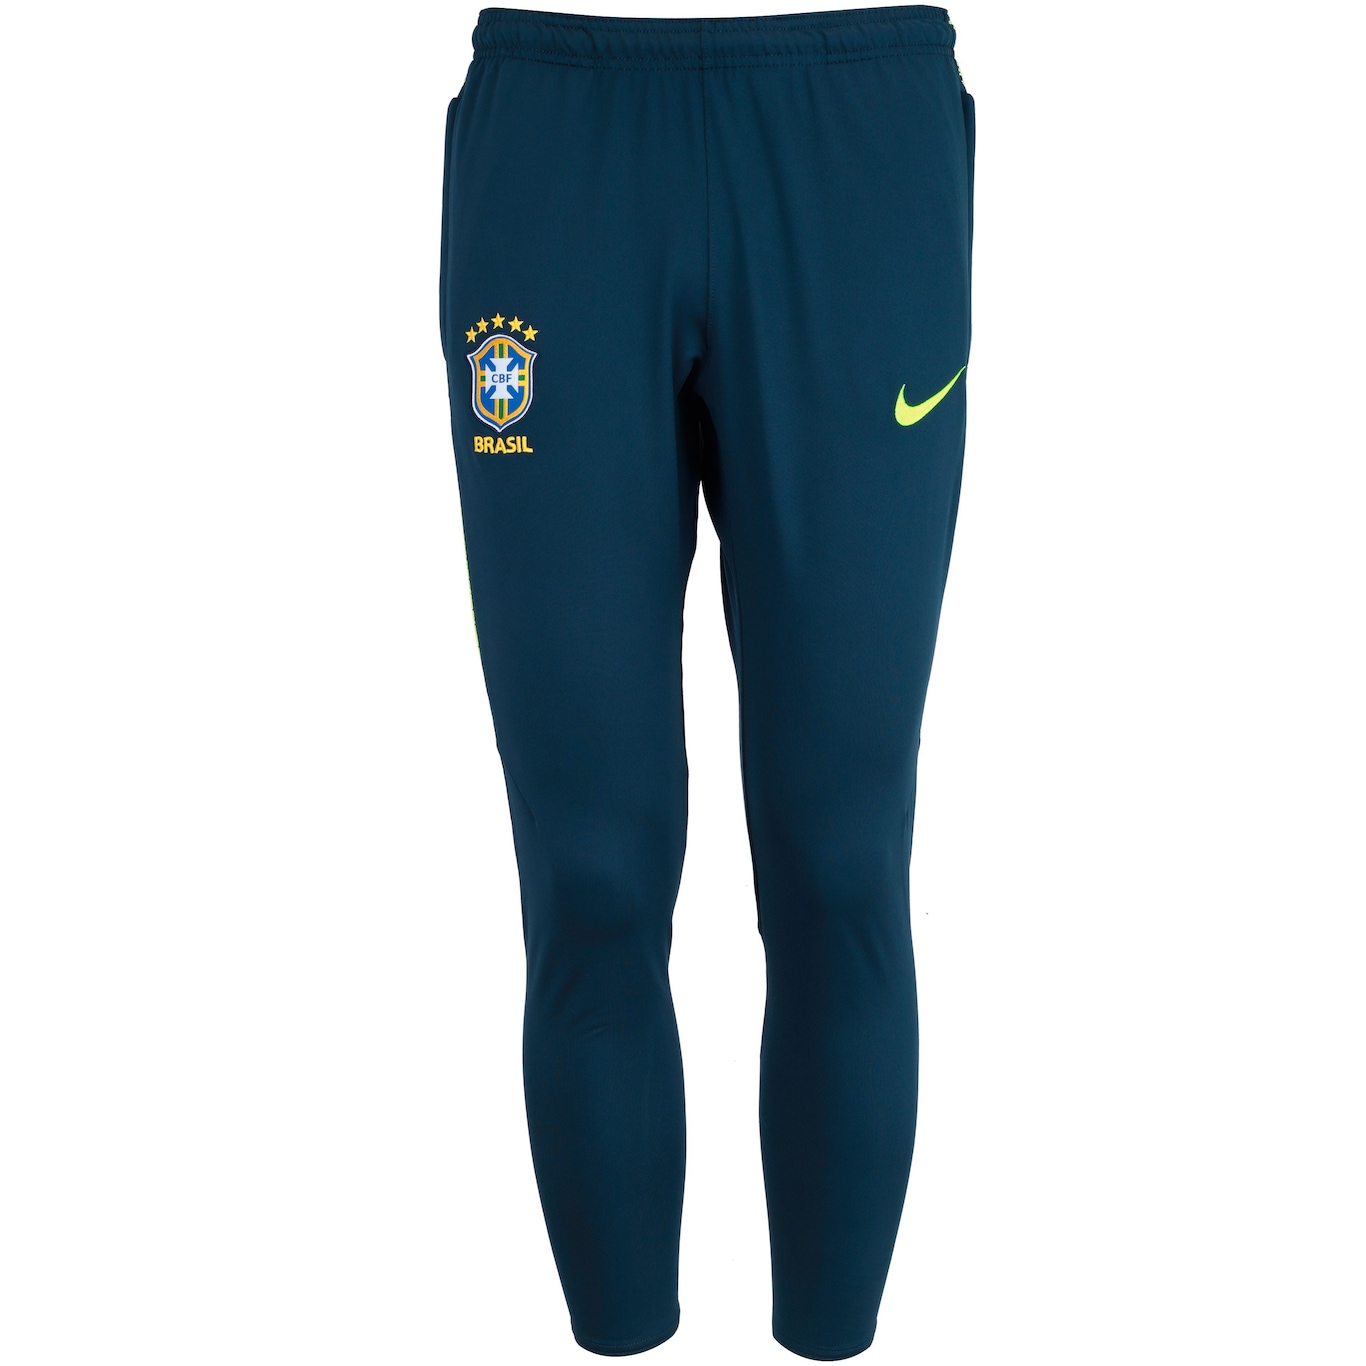 Calça de Treino da Seleção Brasileira 2018 Nike - Masculina